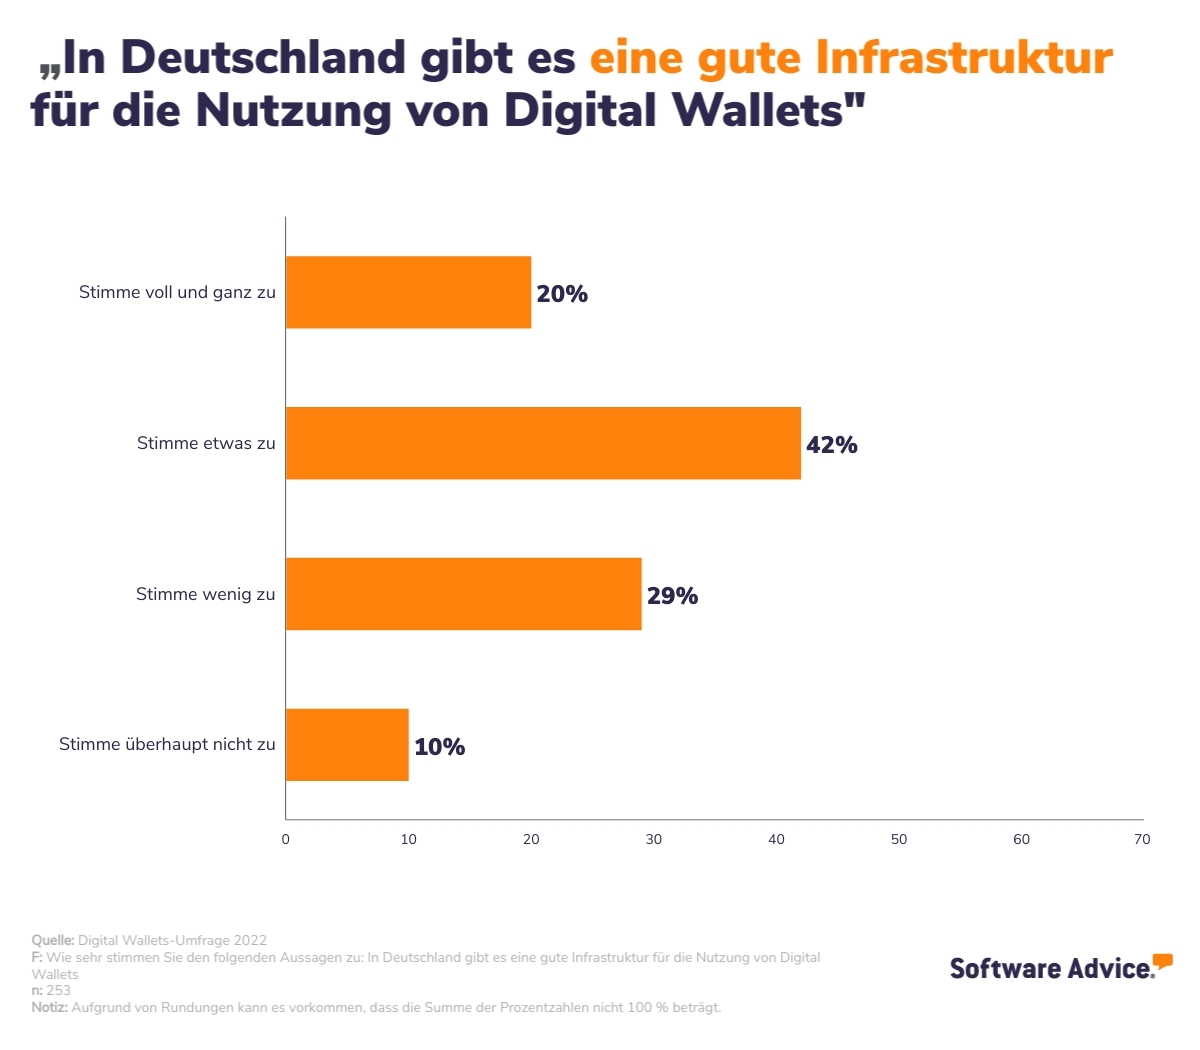 Infrastruktur in Deutschland für die Nutzung von Digital Wallets